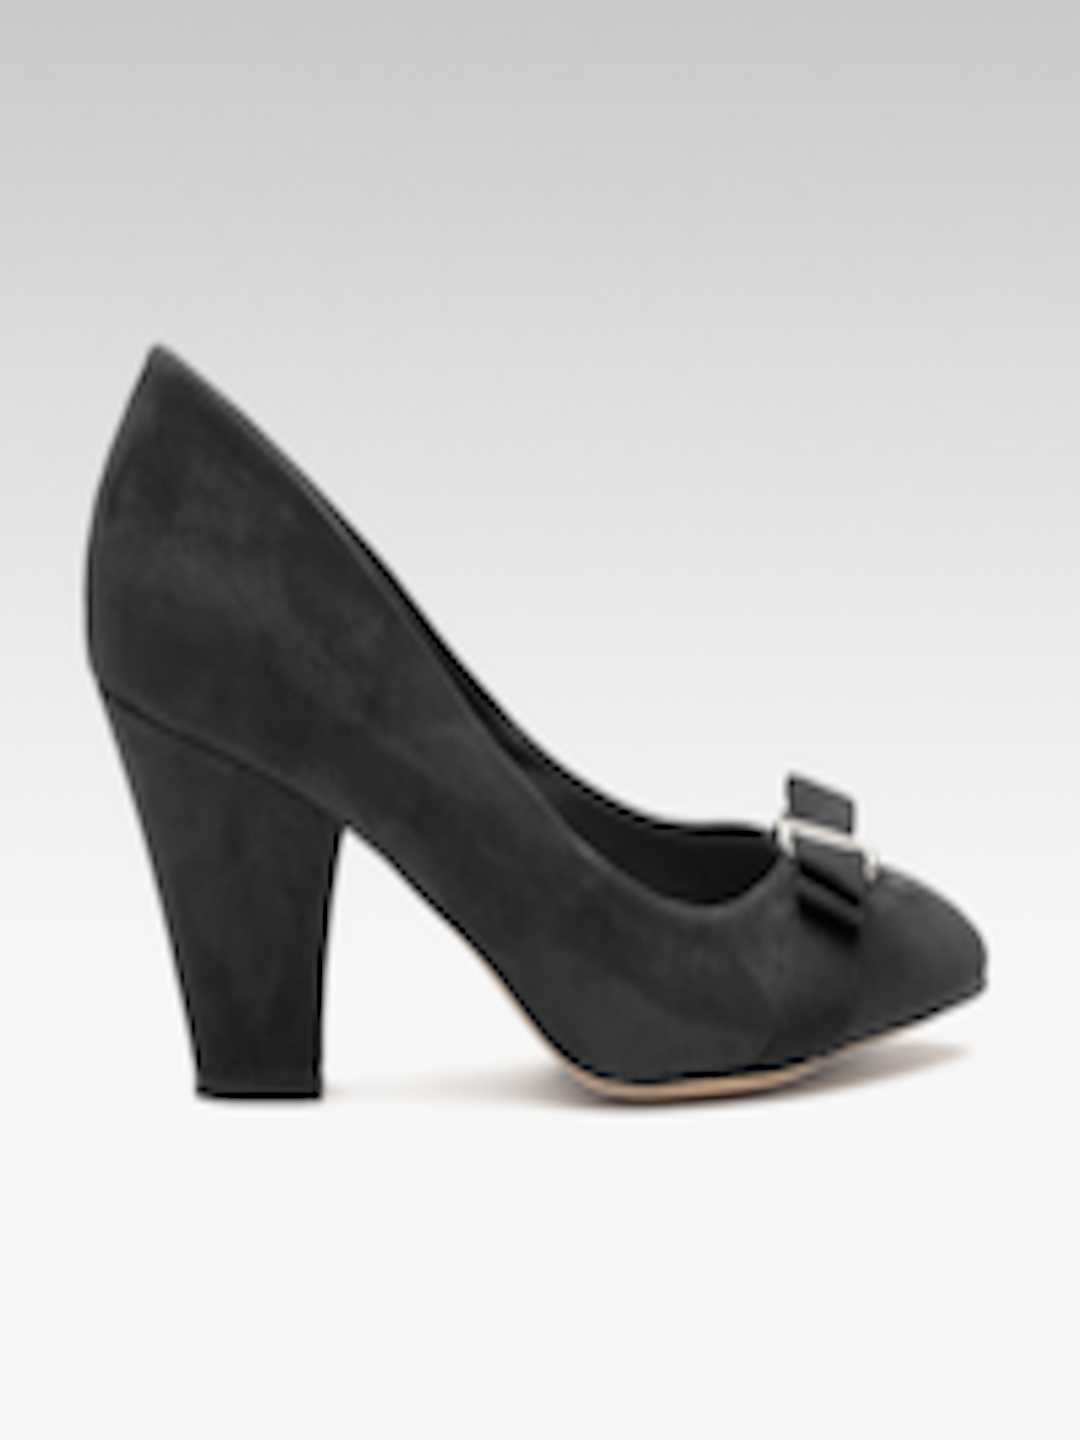 Buy DOROTHY PERKINS Women Black Solid Pumps - Heels for Women 2159017 ...